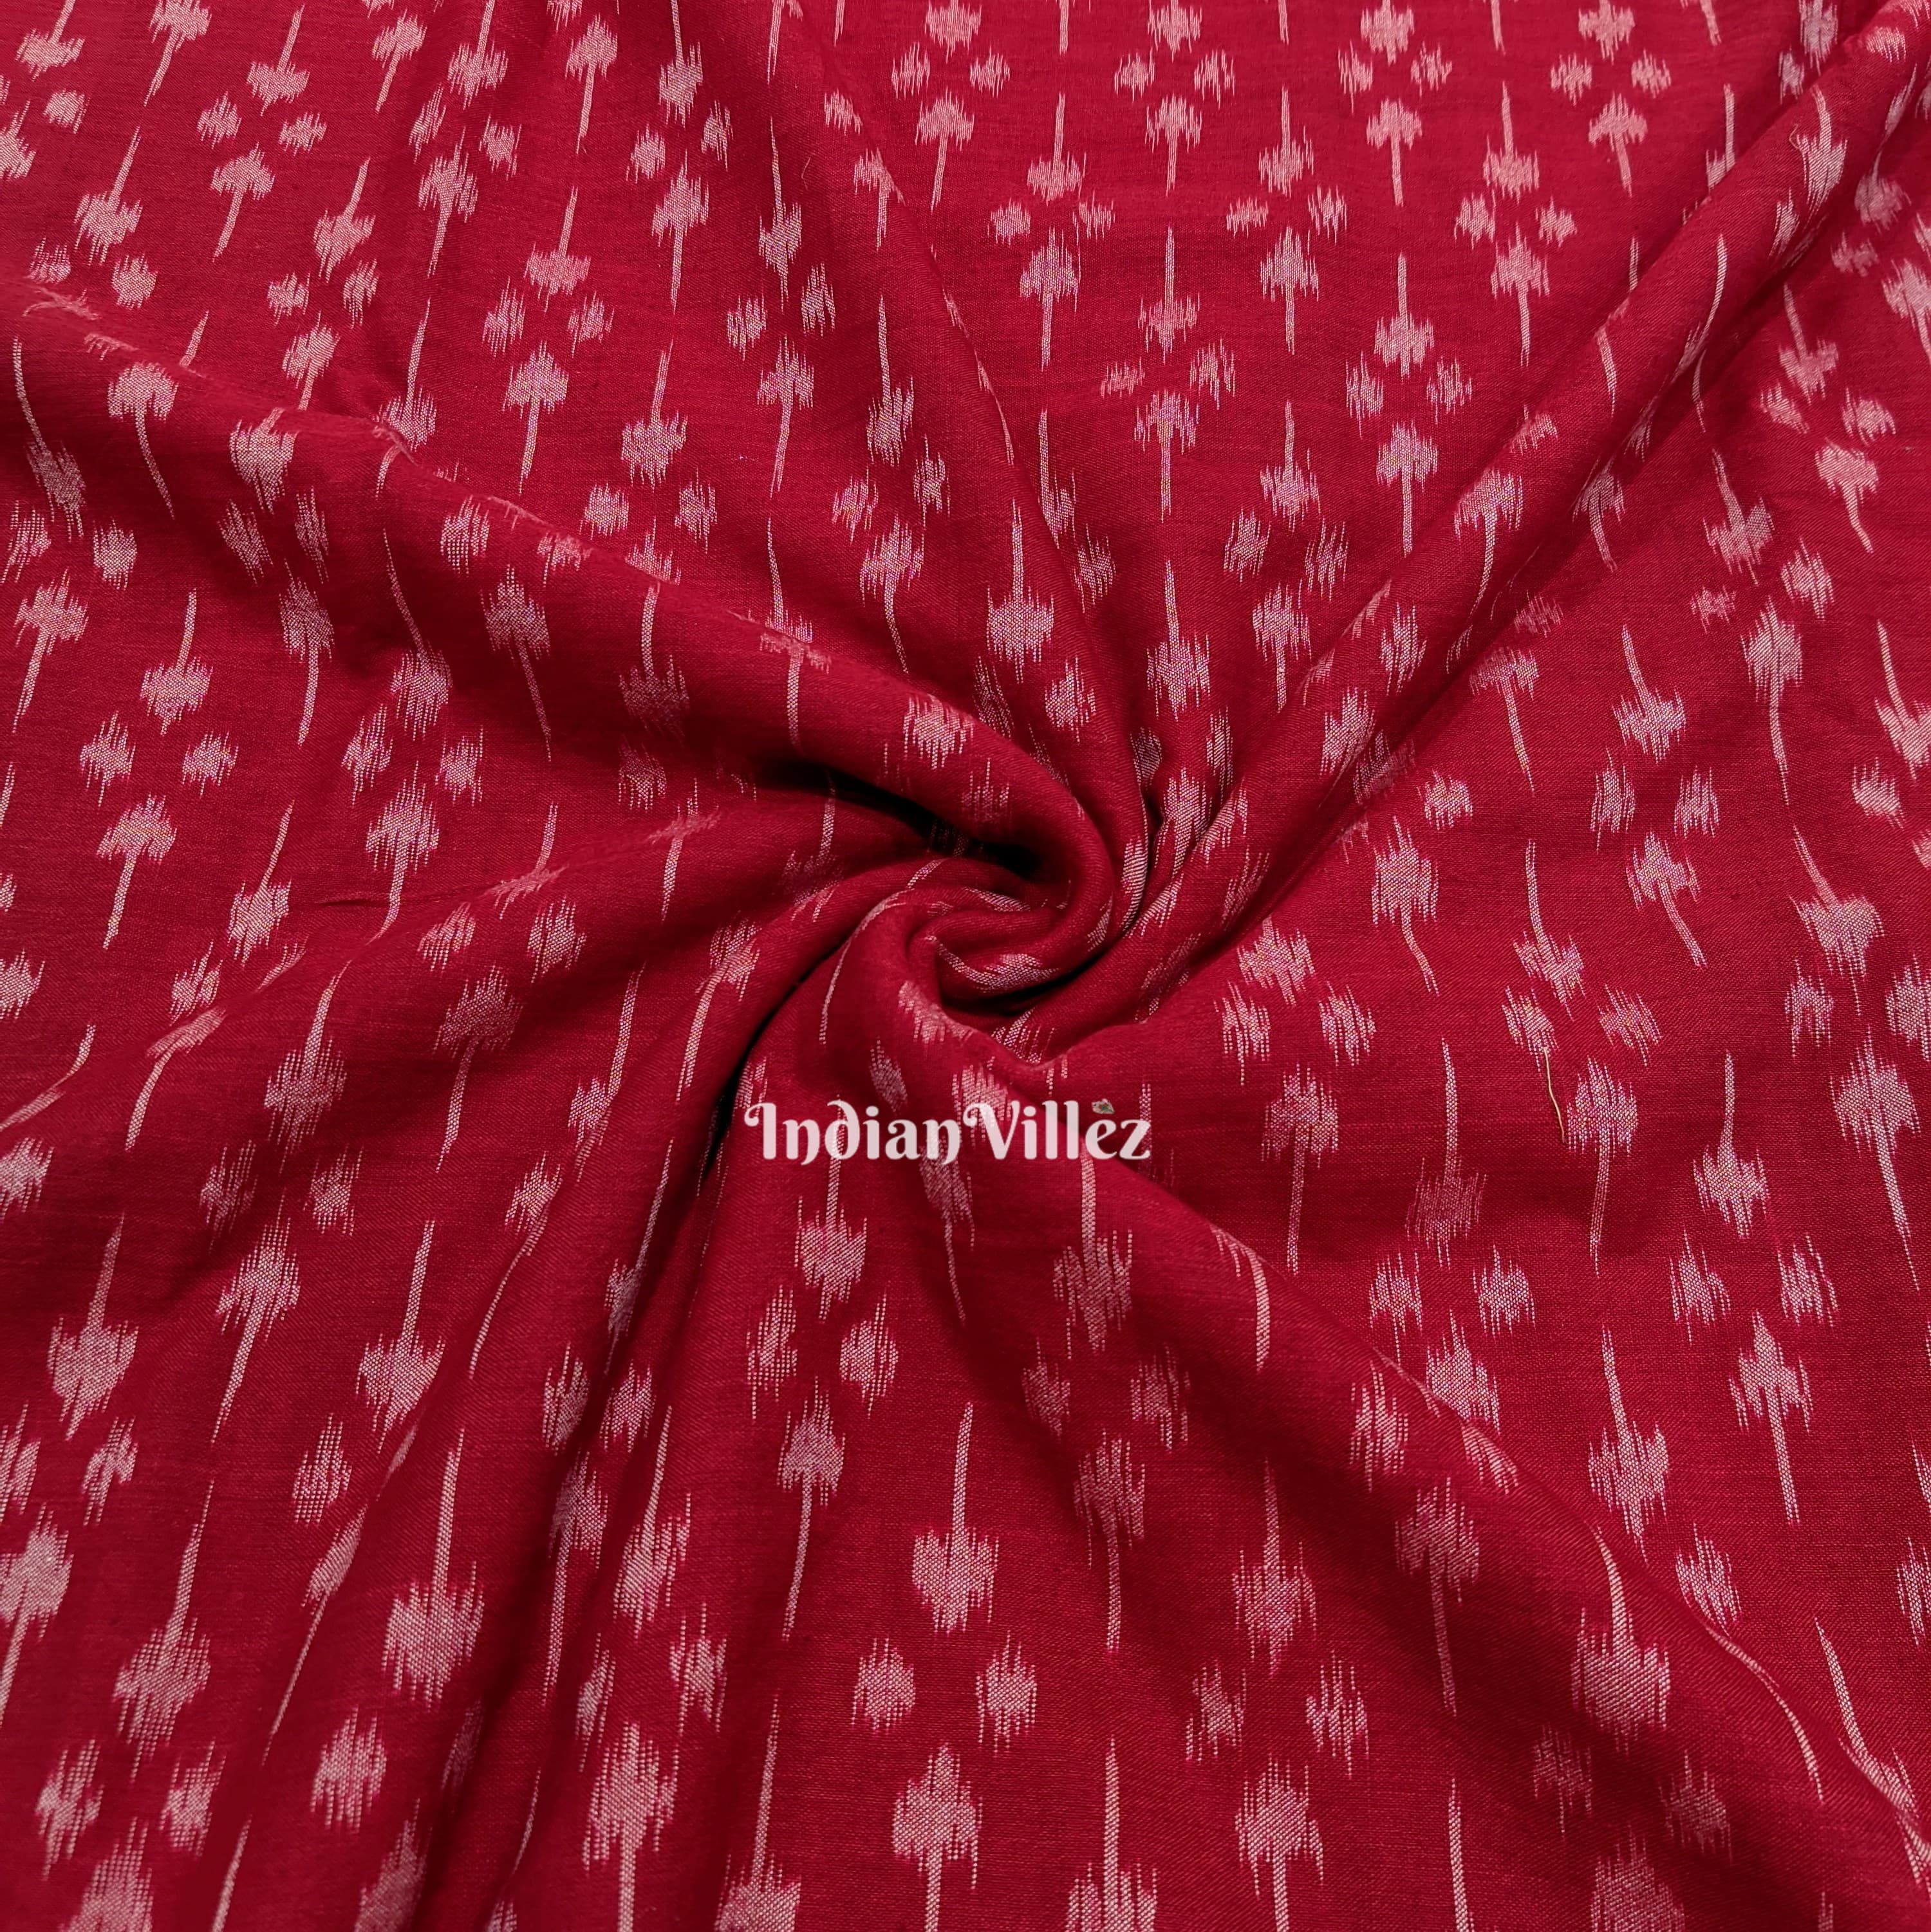 Cherry Red Sambalpuri Ikat Cotton Fabric